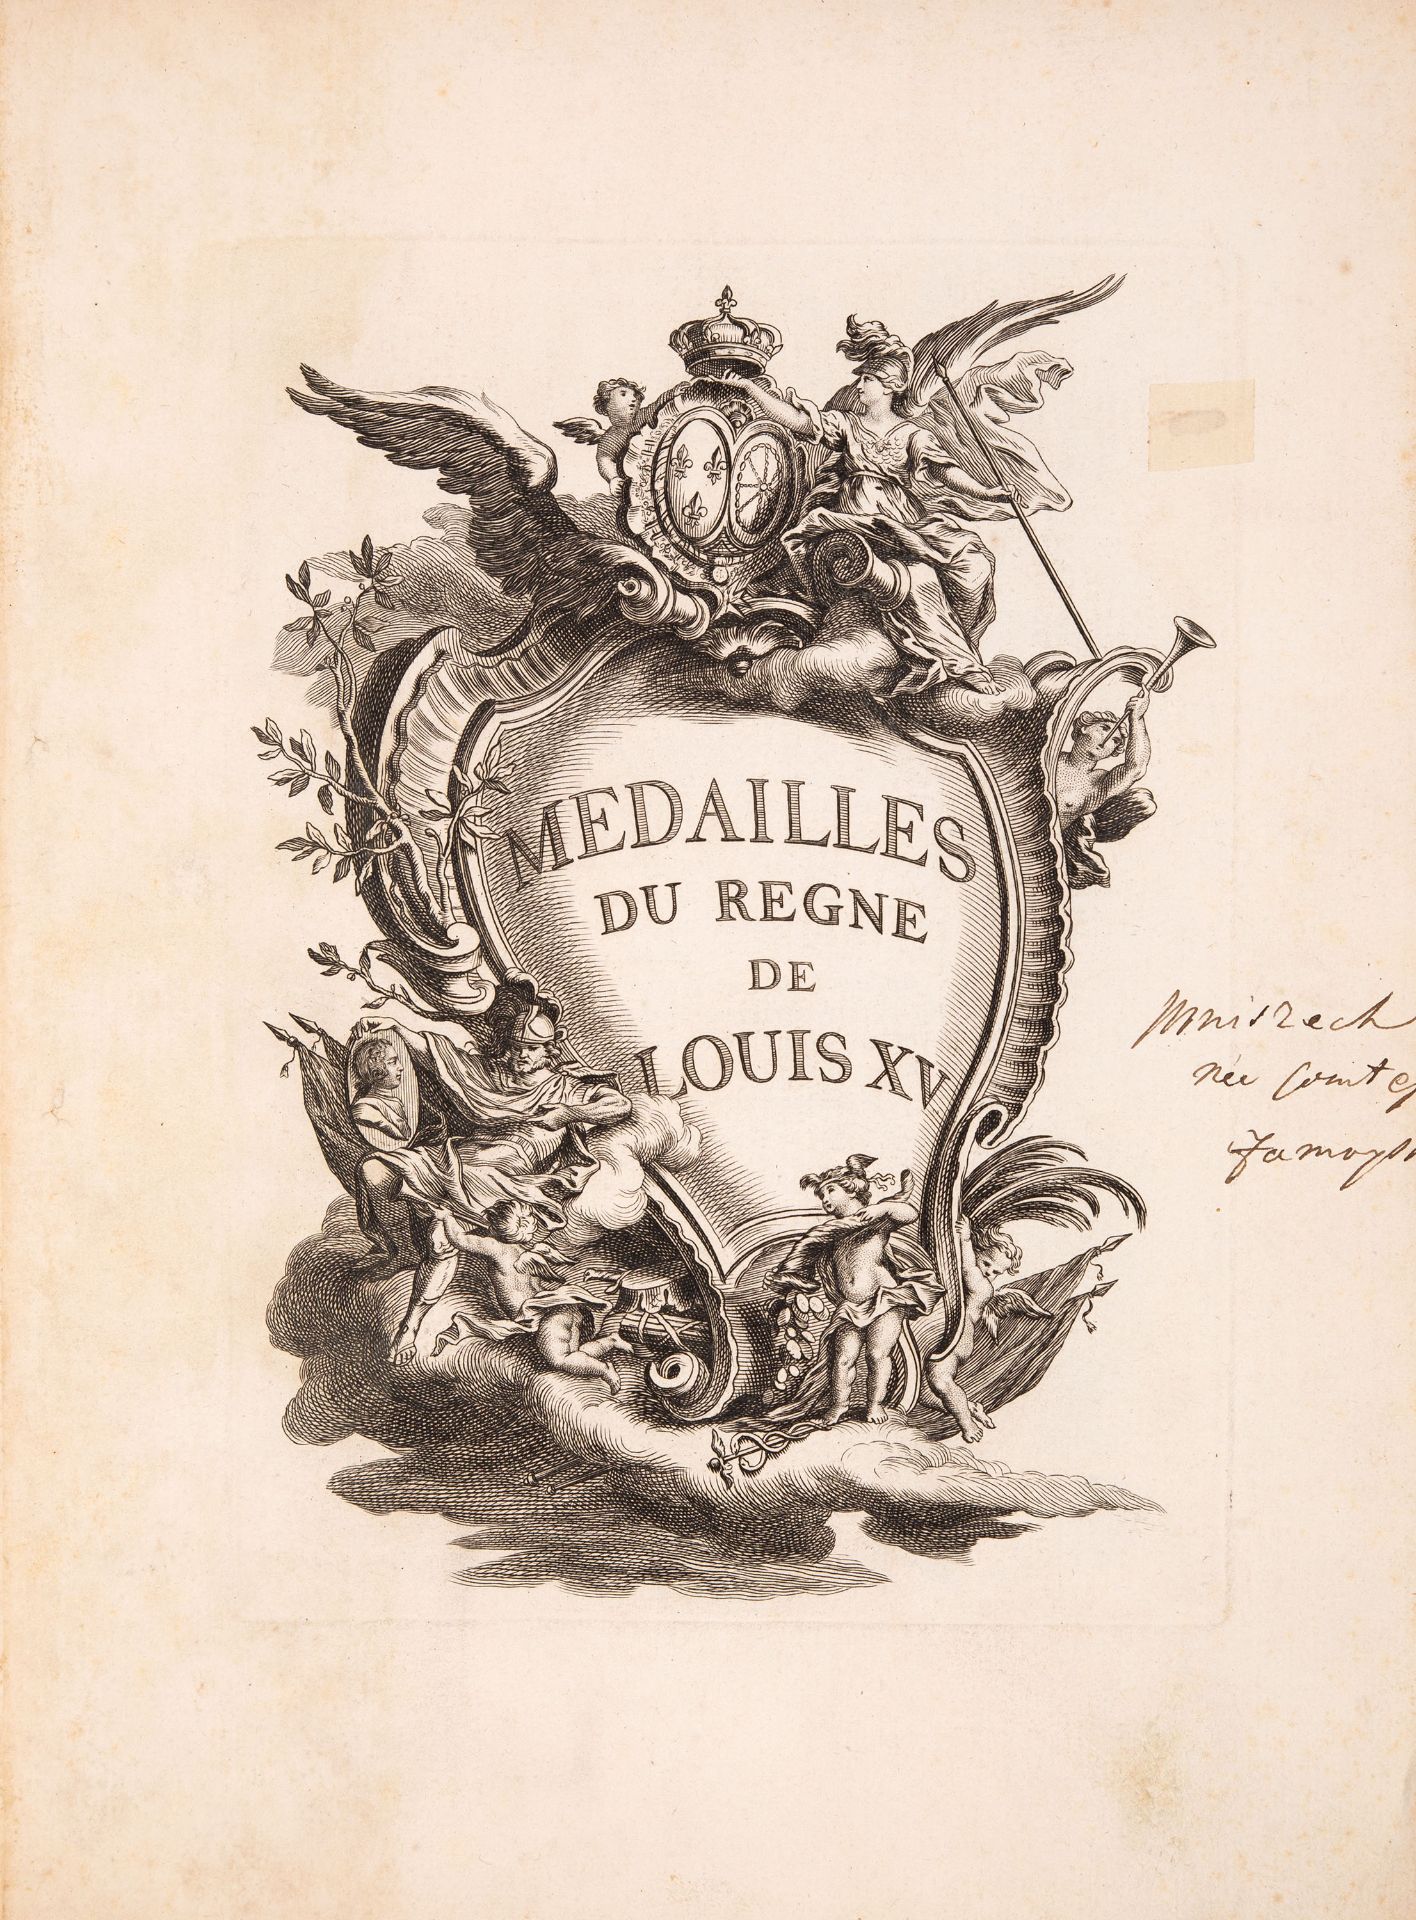 G. R. Fleurimont, Medailles du Regne de Louis XV. Paris 1748.